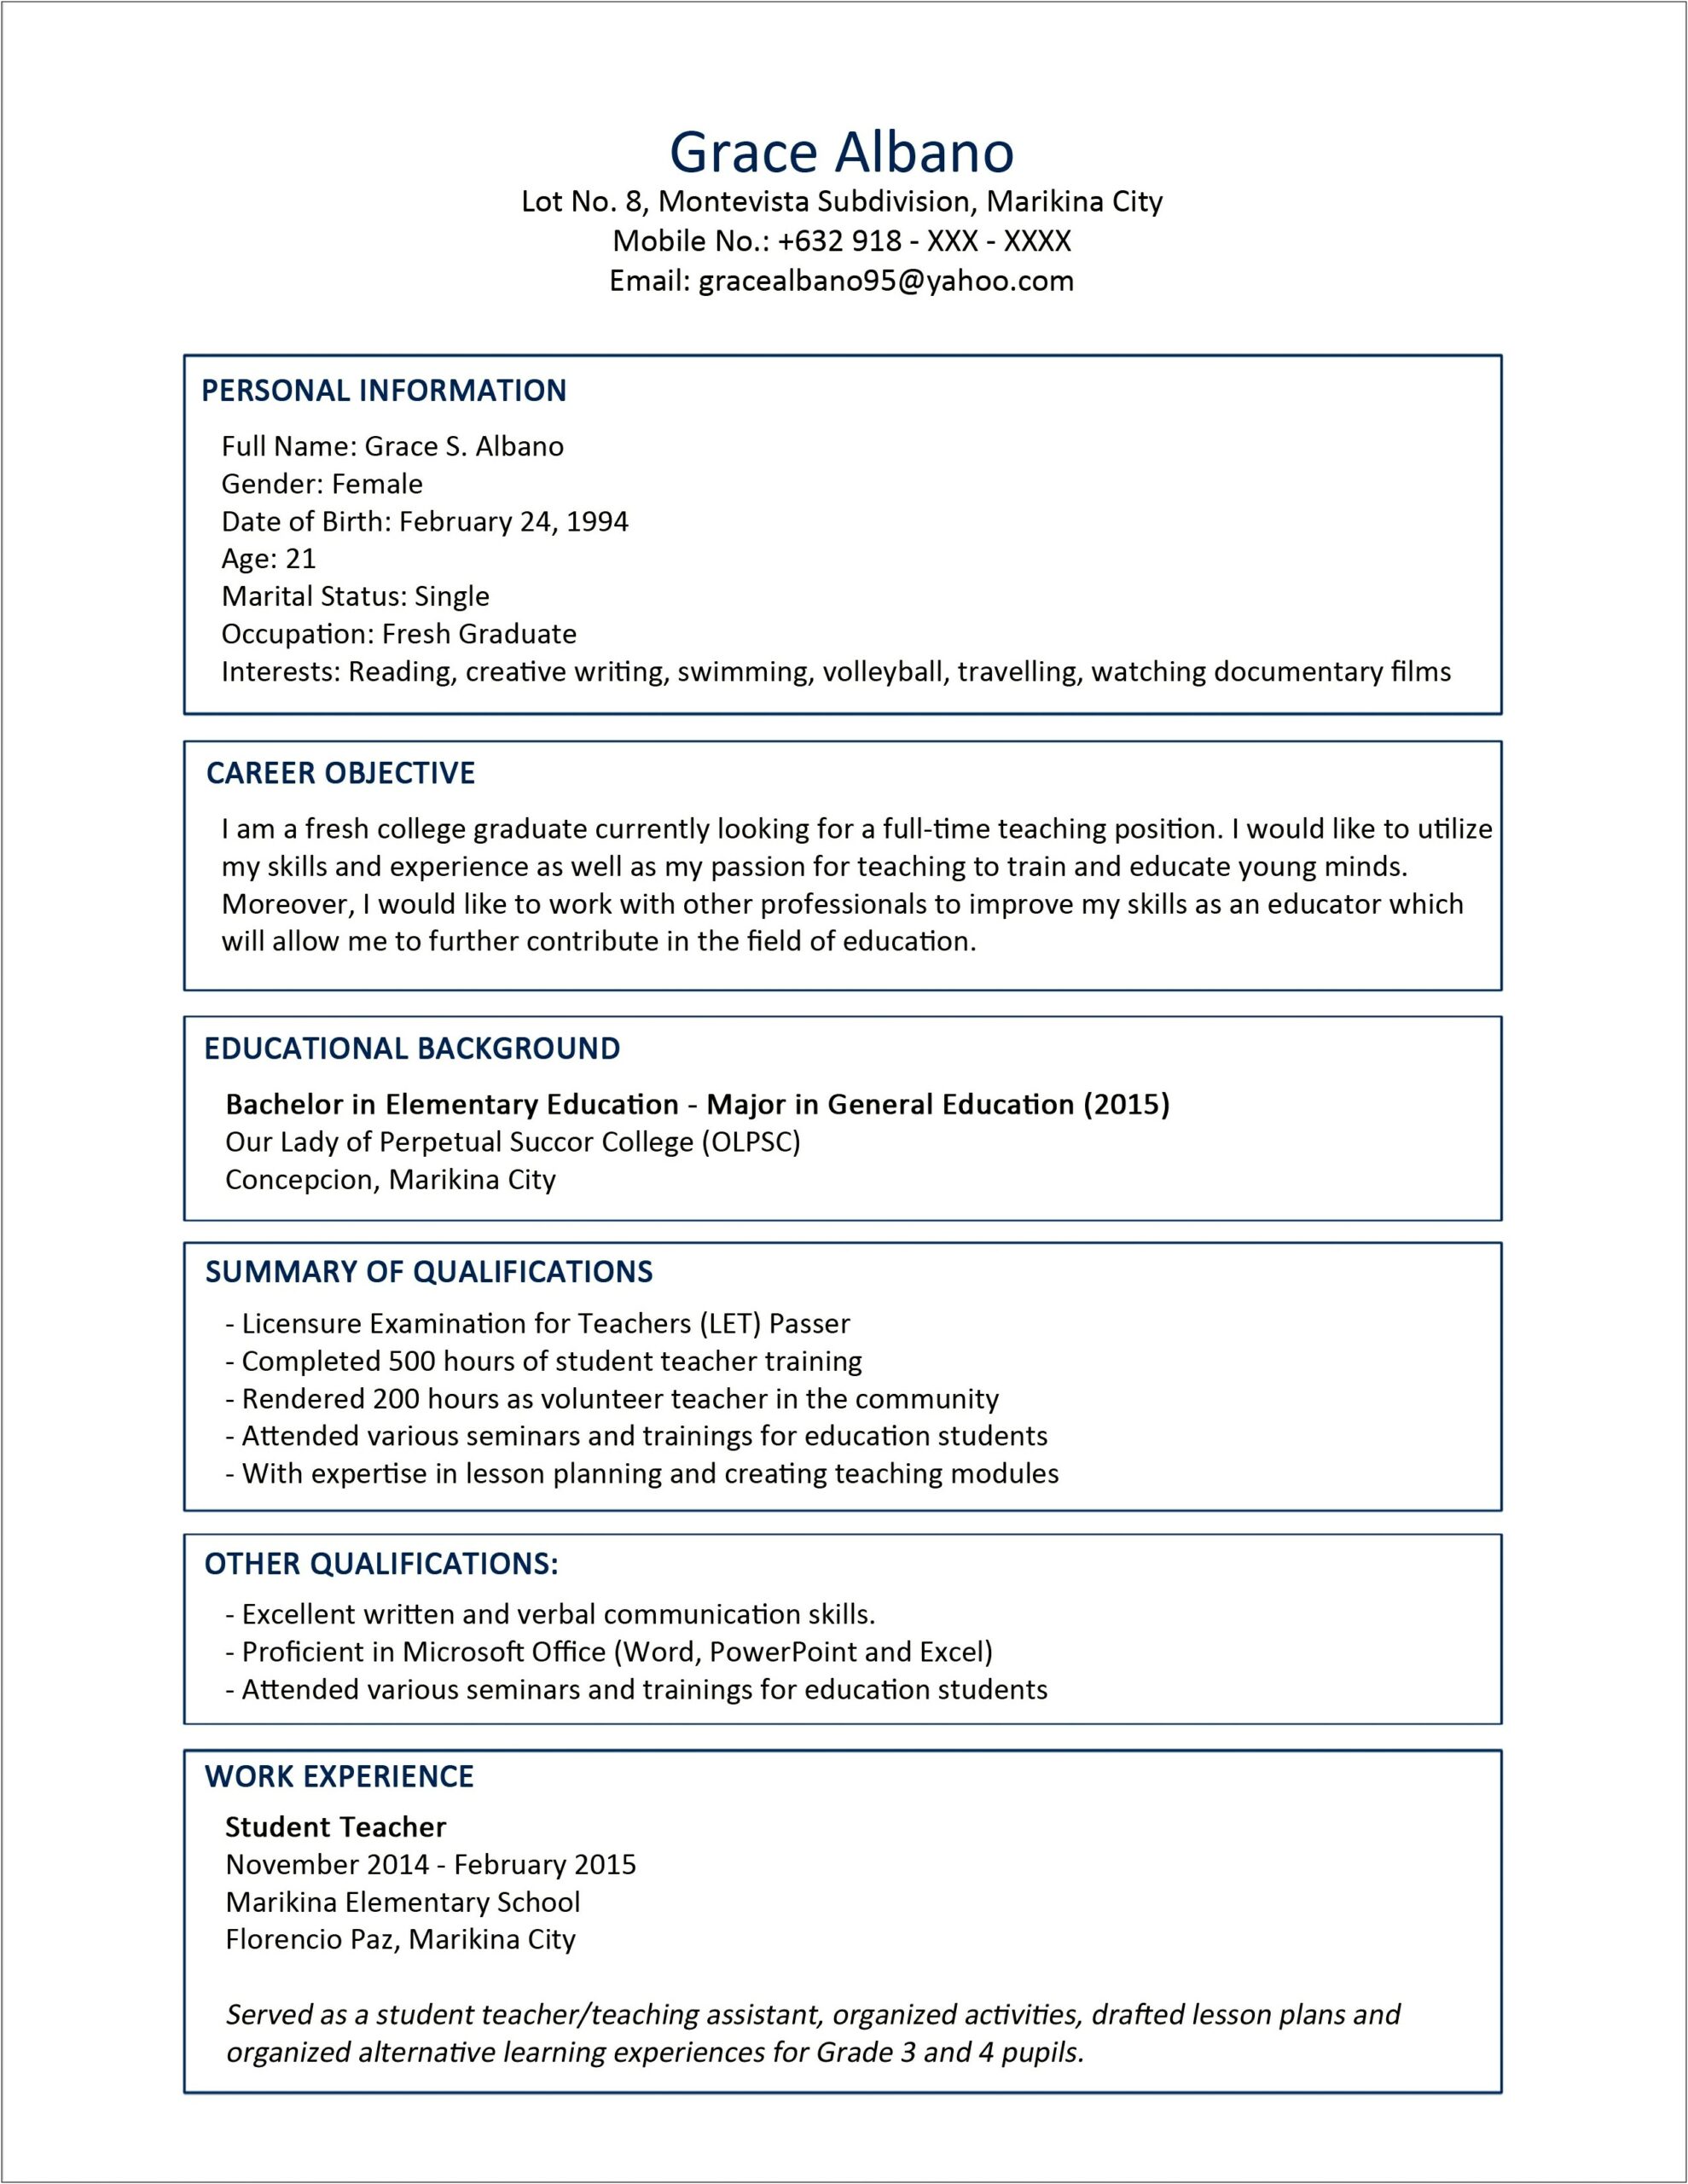 Sample Resume For Job Application For Fresh Graduate